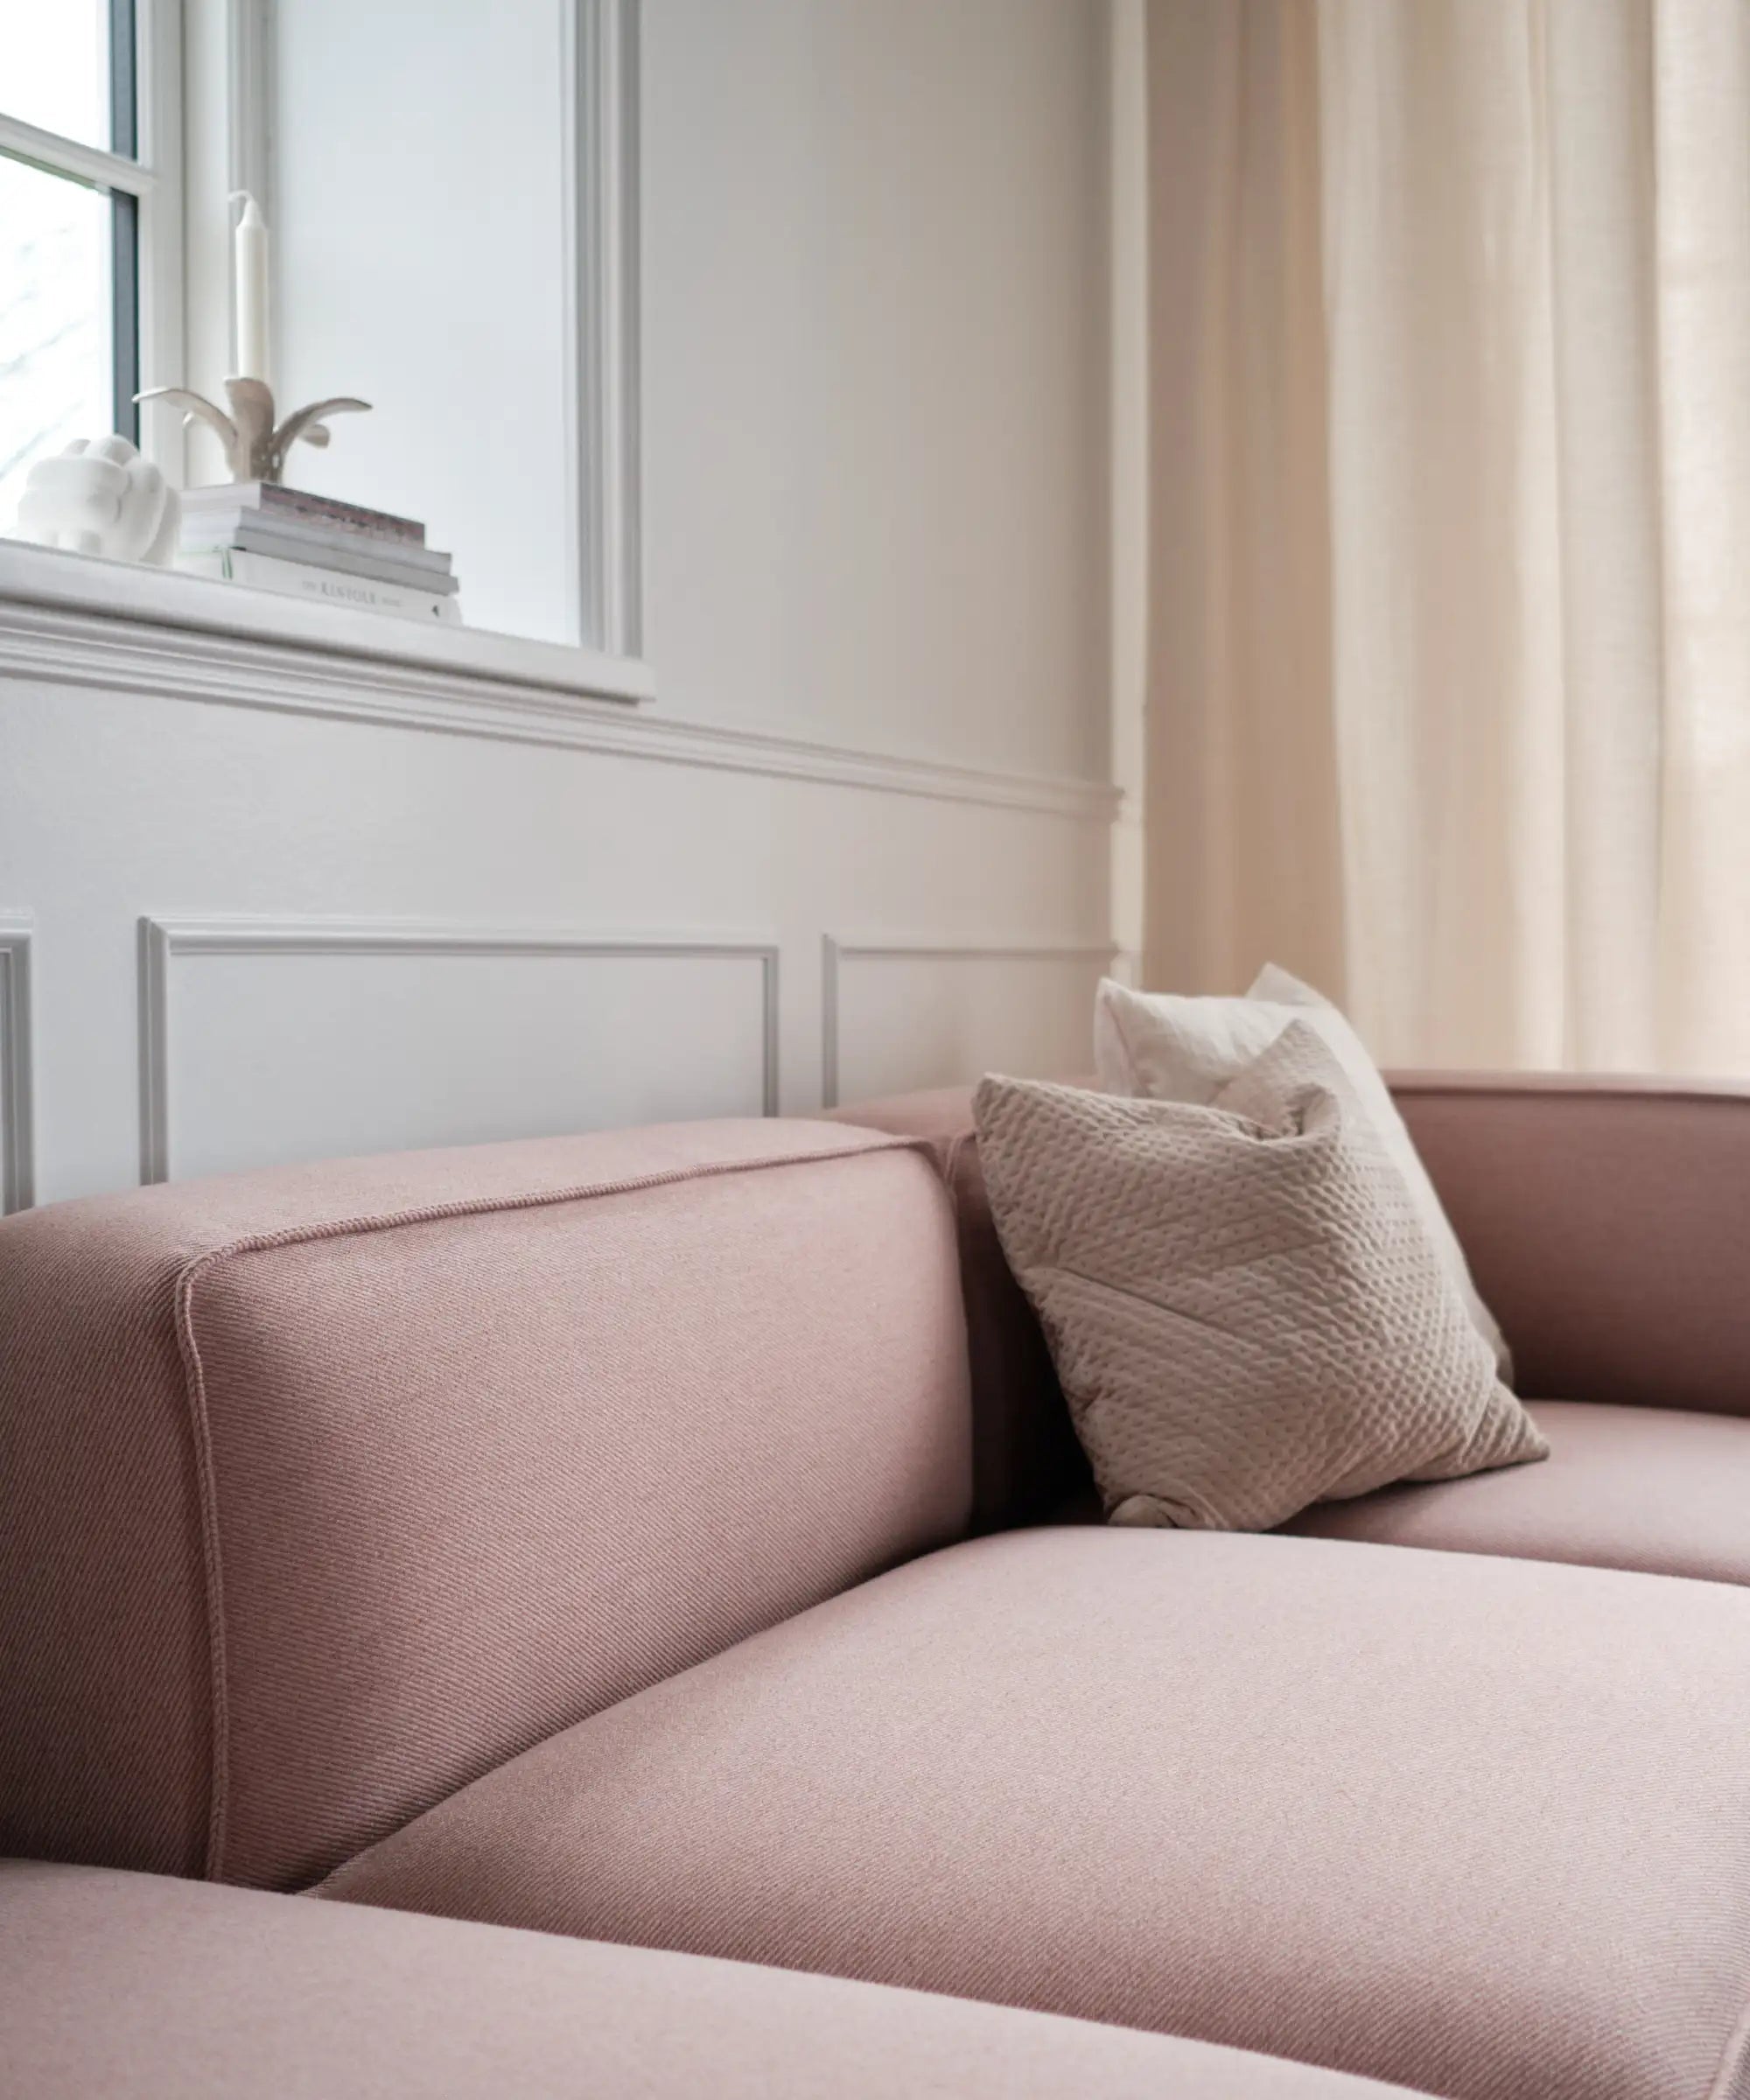 Blød lyserød sofa i dansk design, lignende basecamp sofa fra Njordec